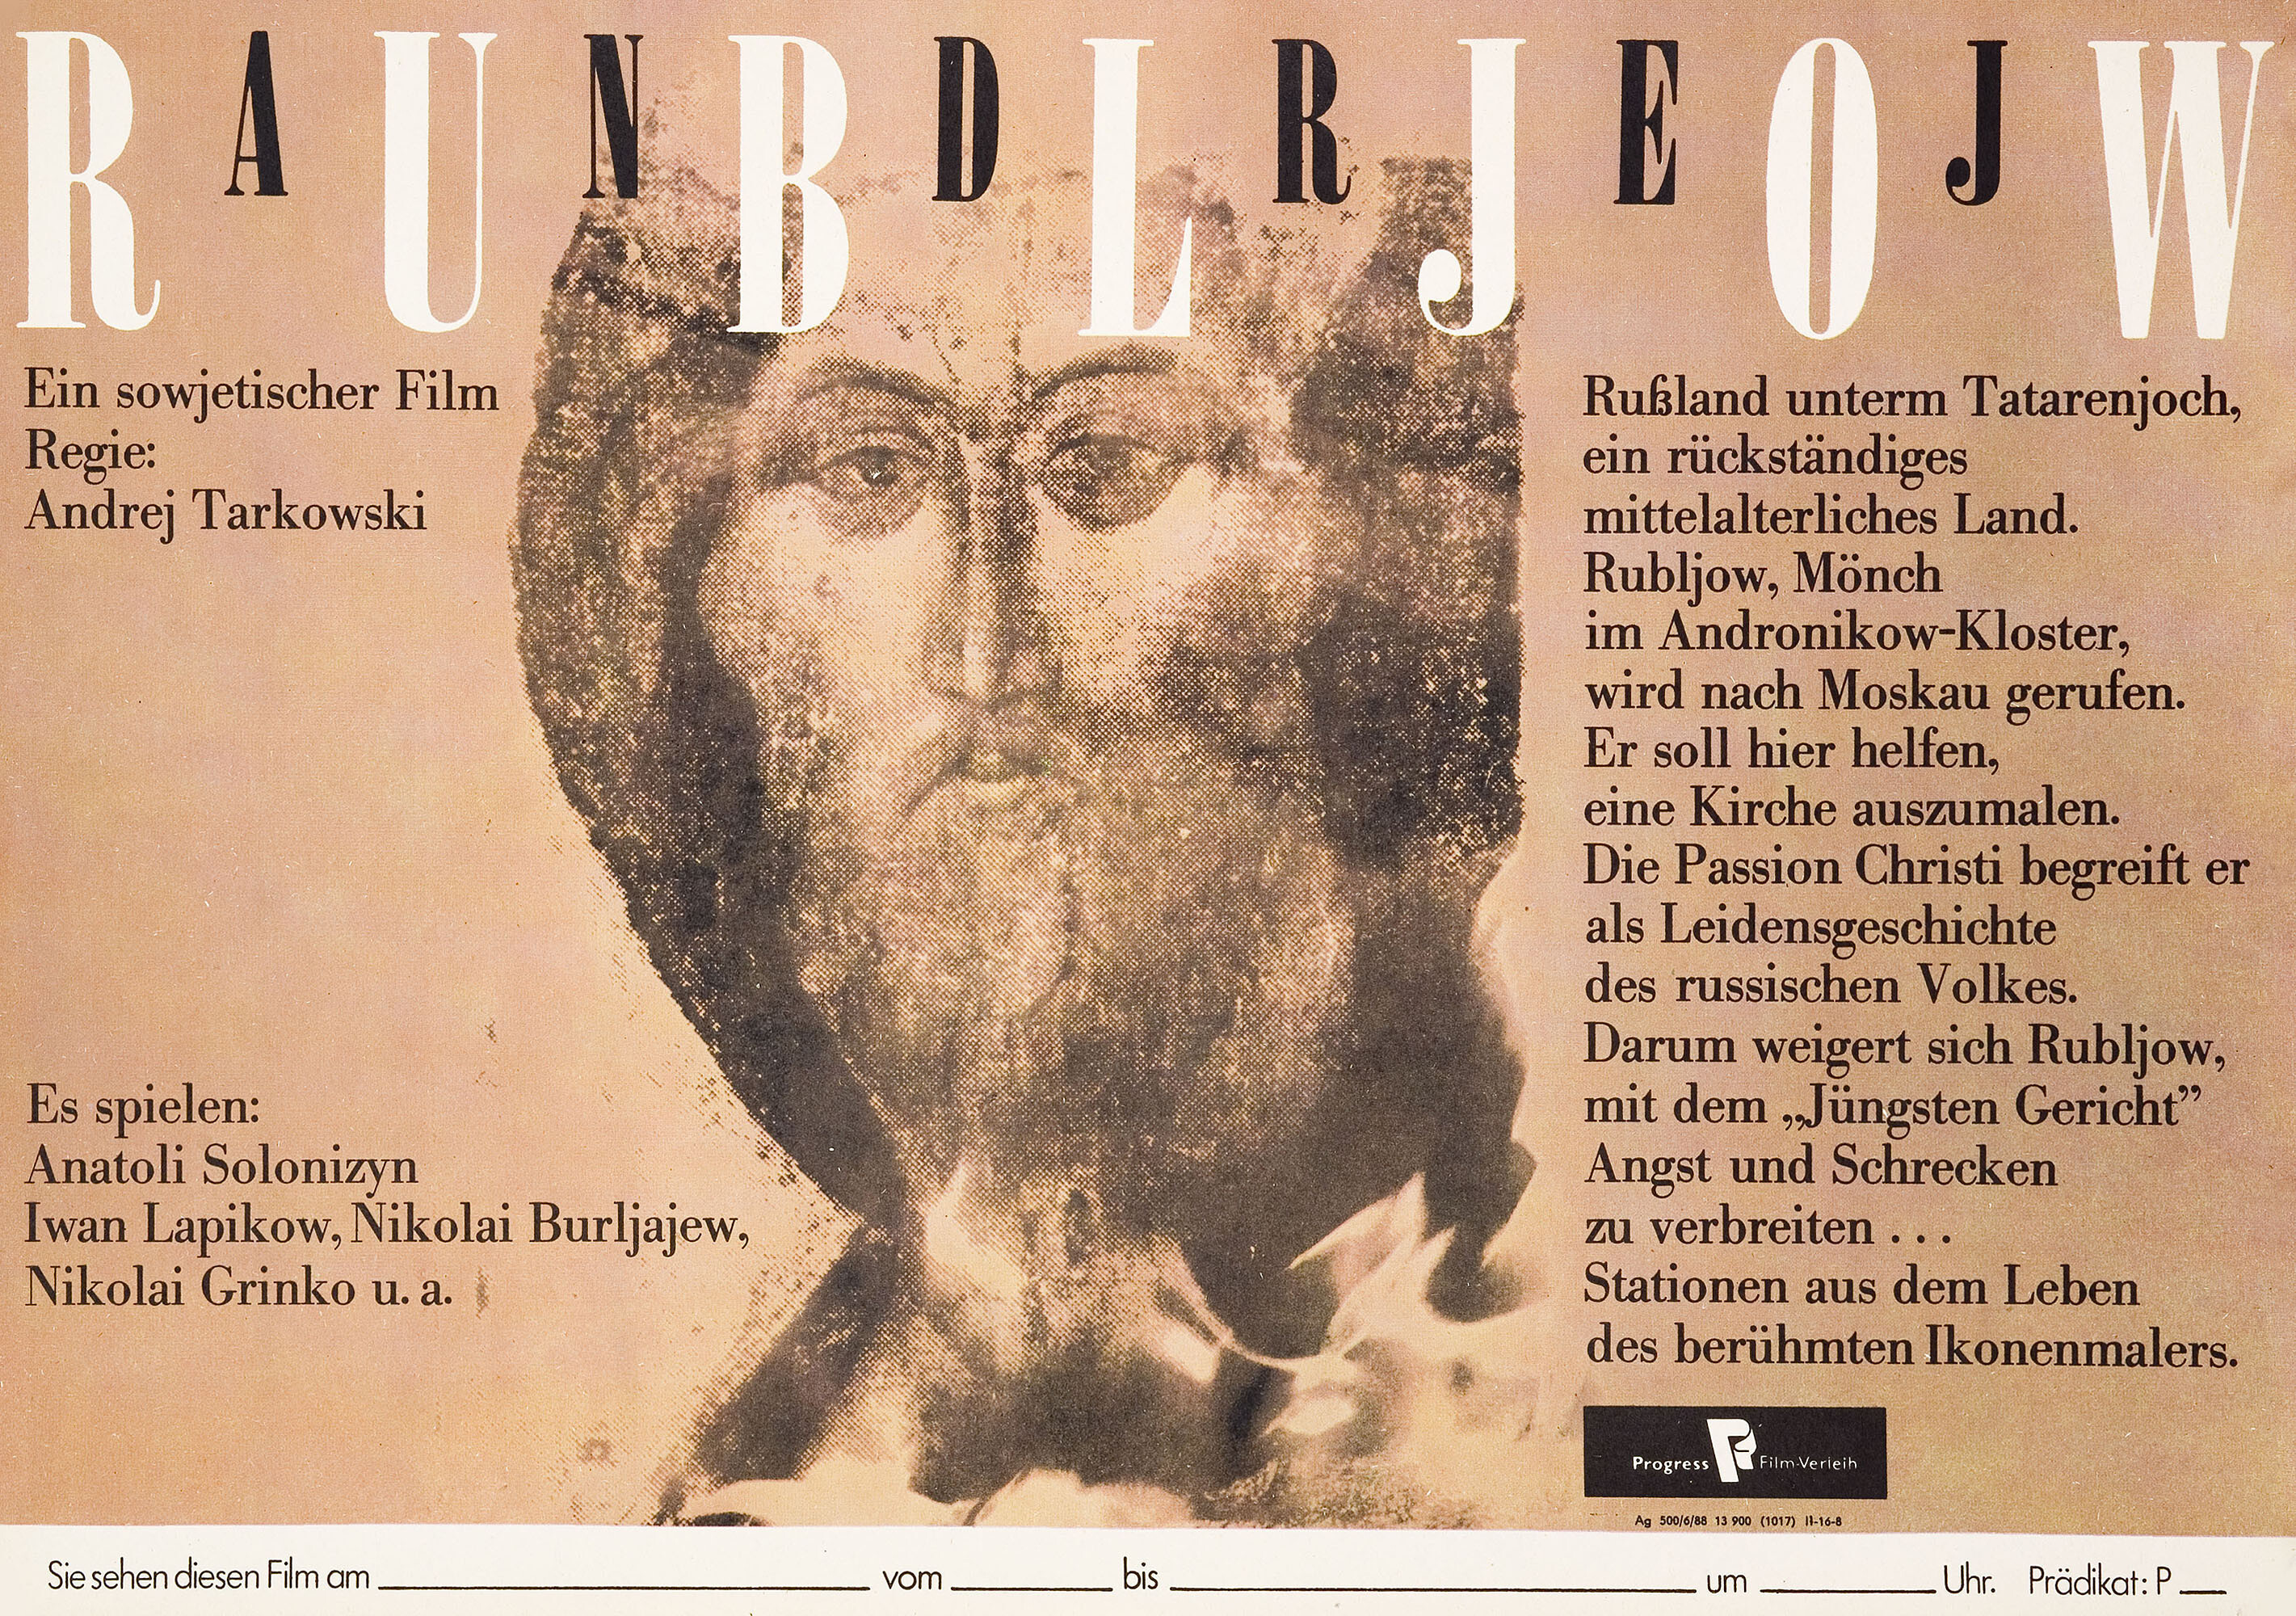 Андрей Рублёв (режиссёр Андрей Тарковский, 1966), East немецкий (ФРГ) постер к фильму, 1988 год